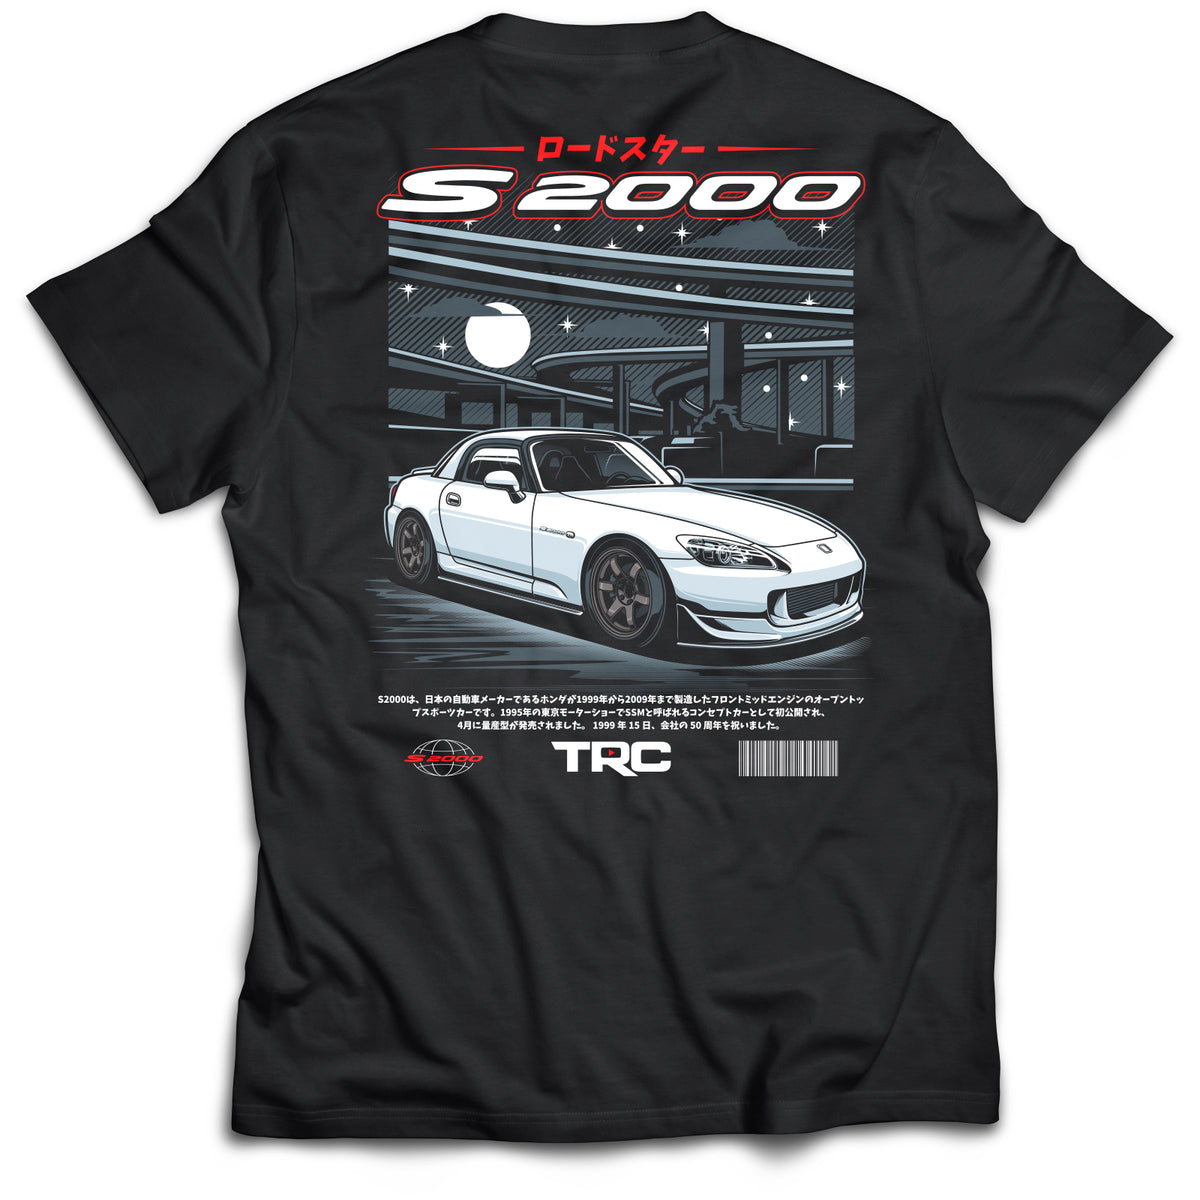 TRC Turbo S2000 T-Shirt (700 Entries)